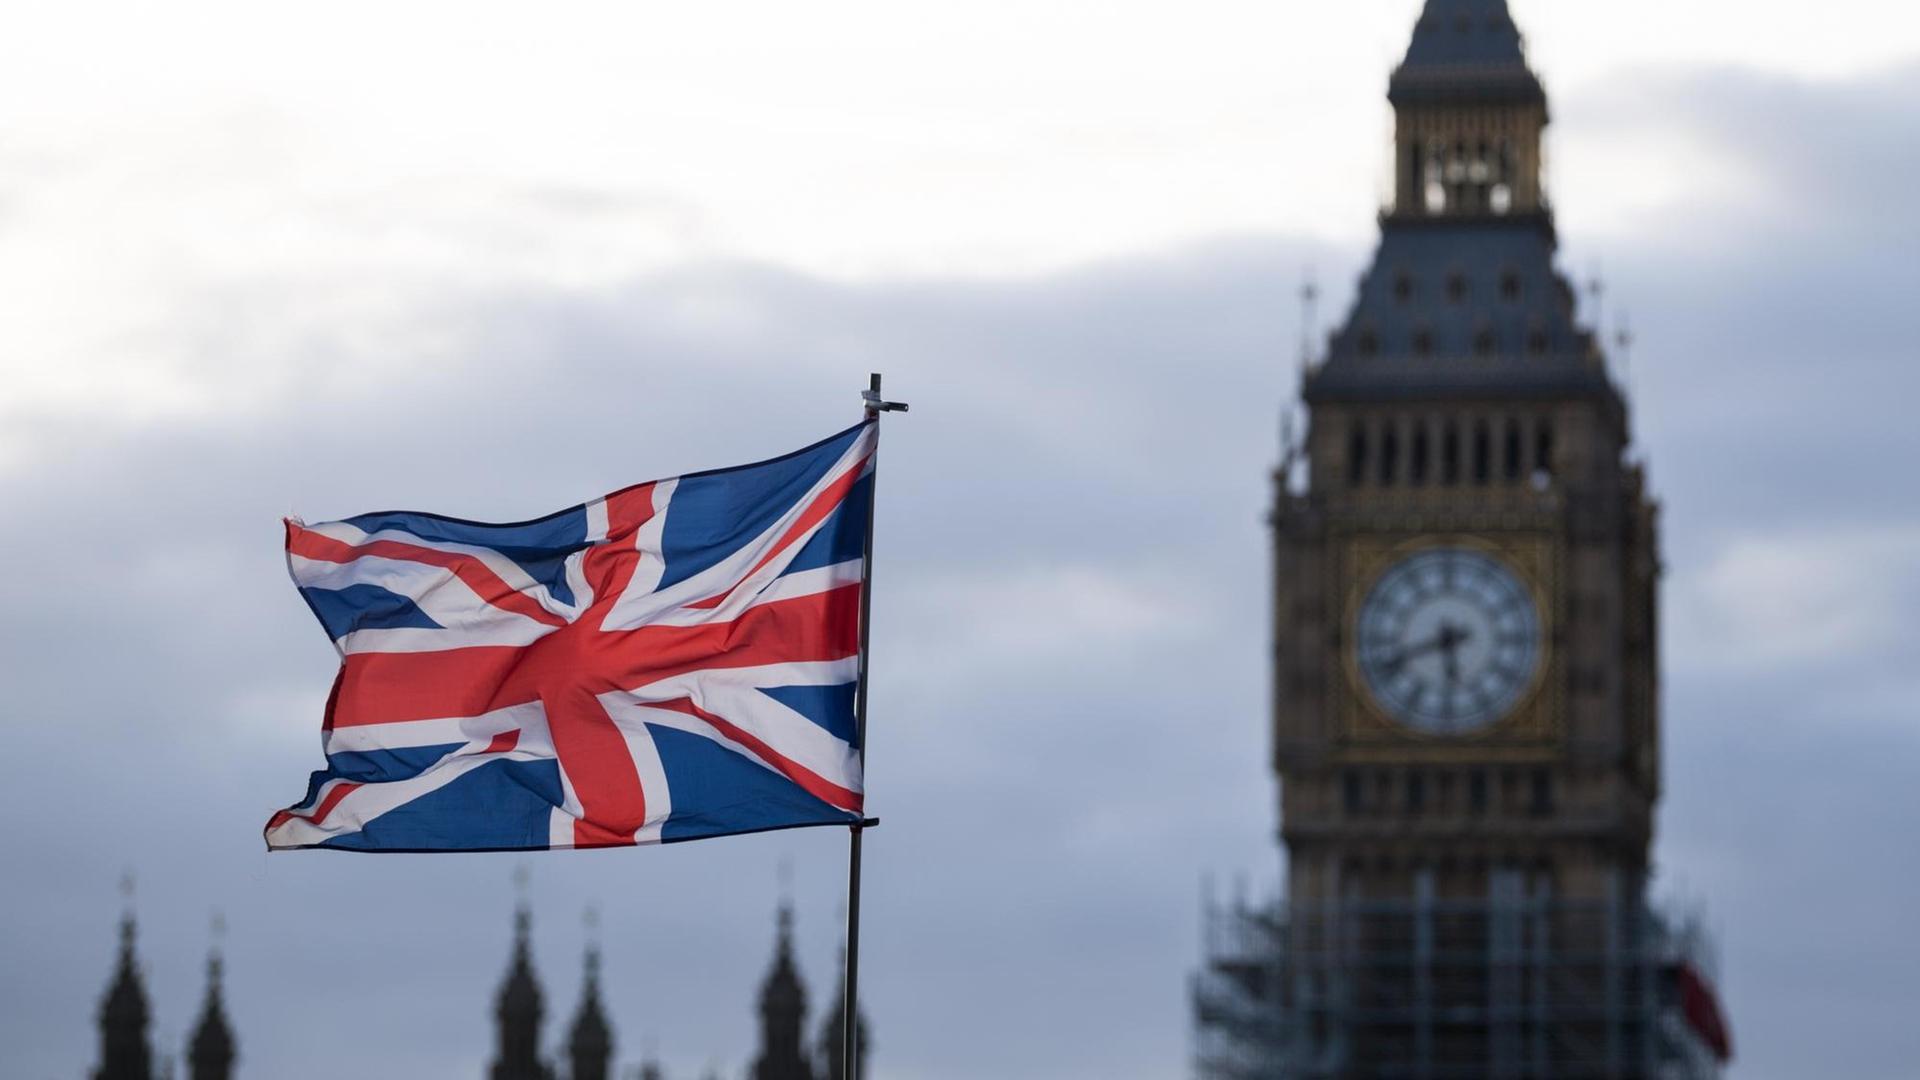 Eine Fahne vom Vereinigtem Königreich (Union Jack) weht in London im Wind. Im Hintergrund ist der Uhrturm Elizabeth Tower mit dem Big Ben zu sehen.